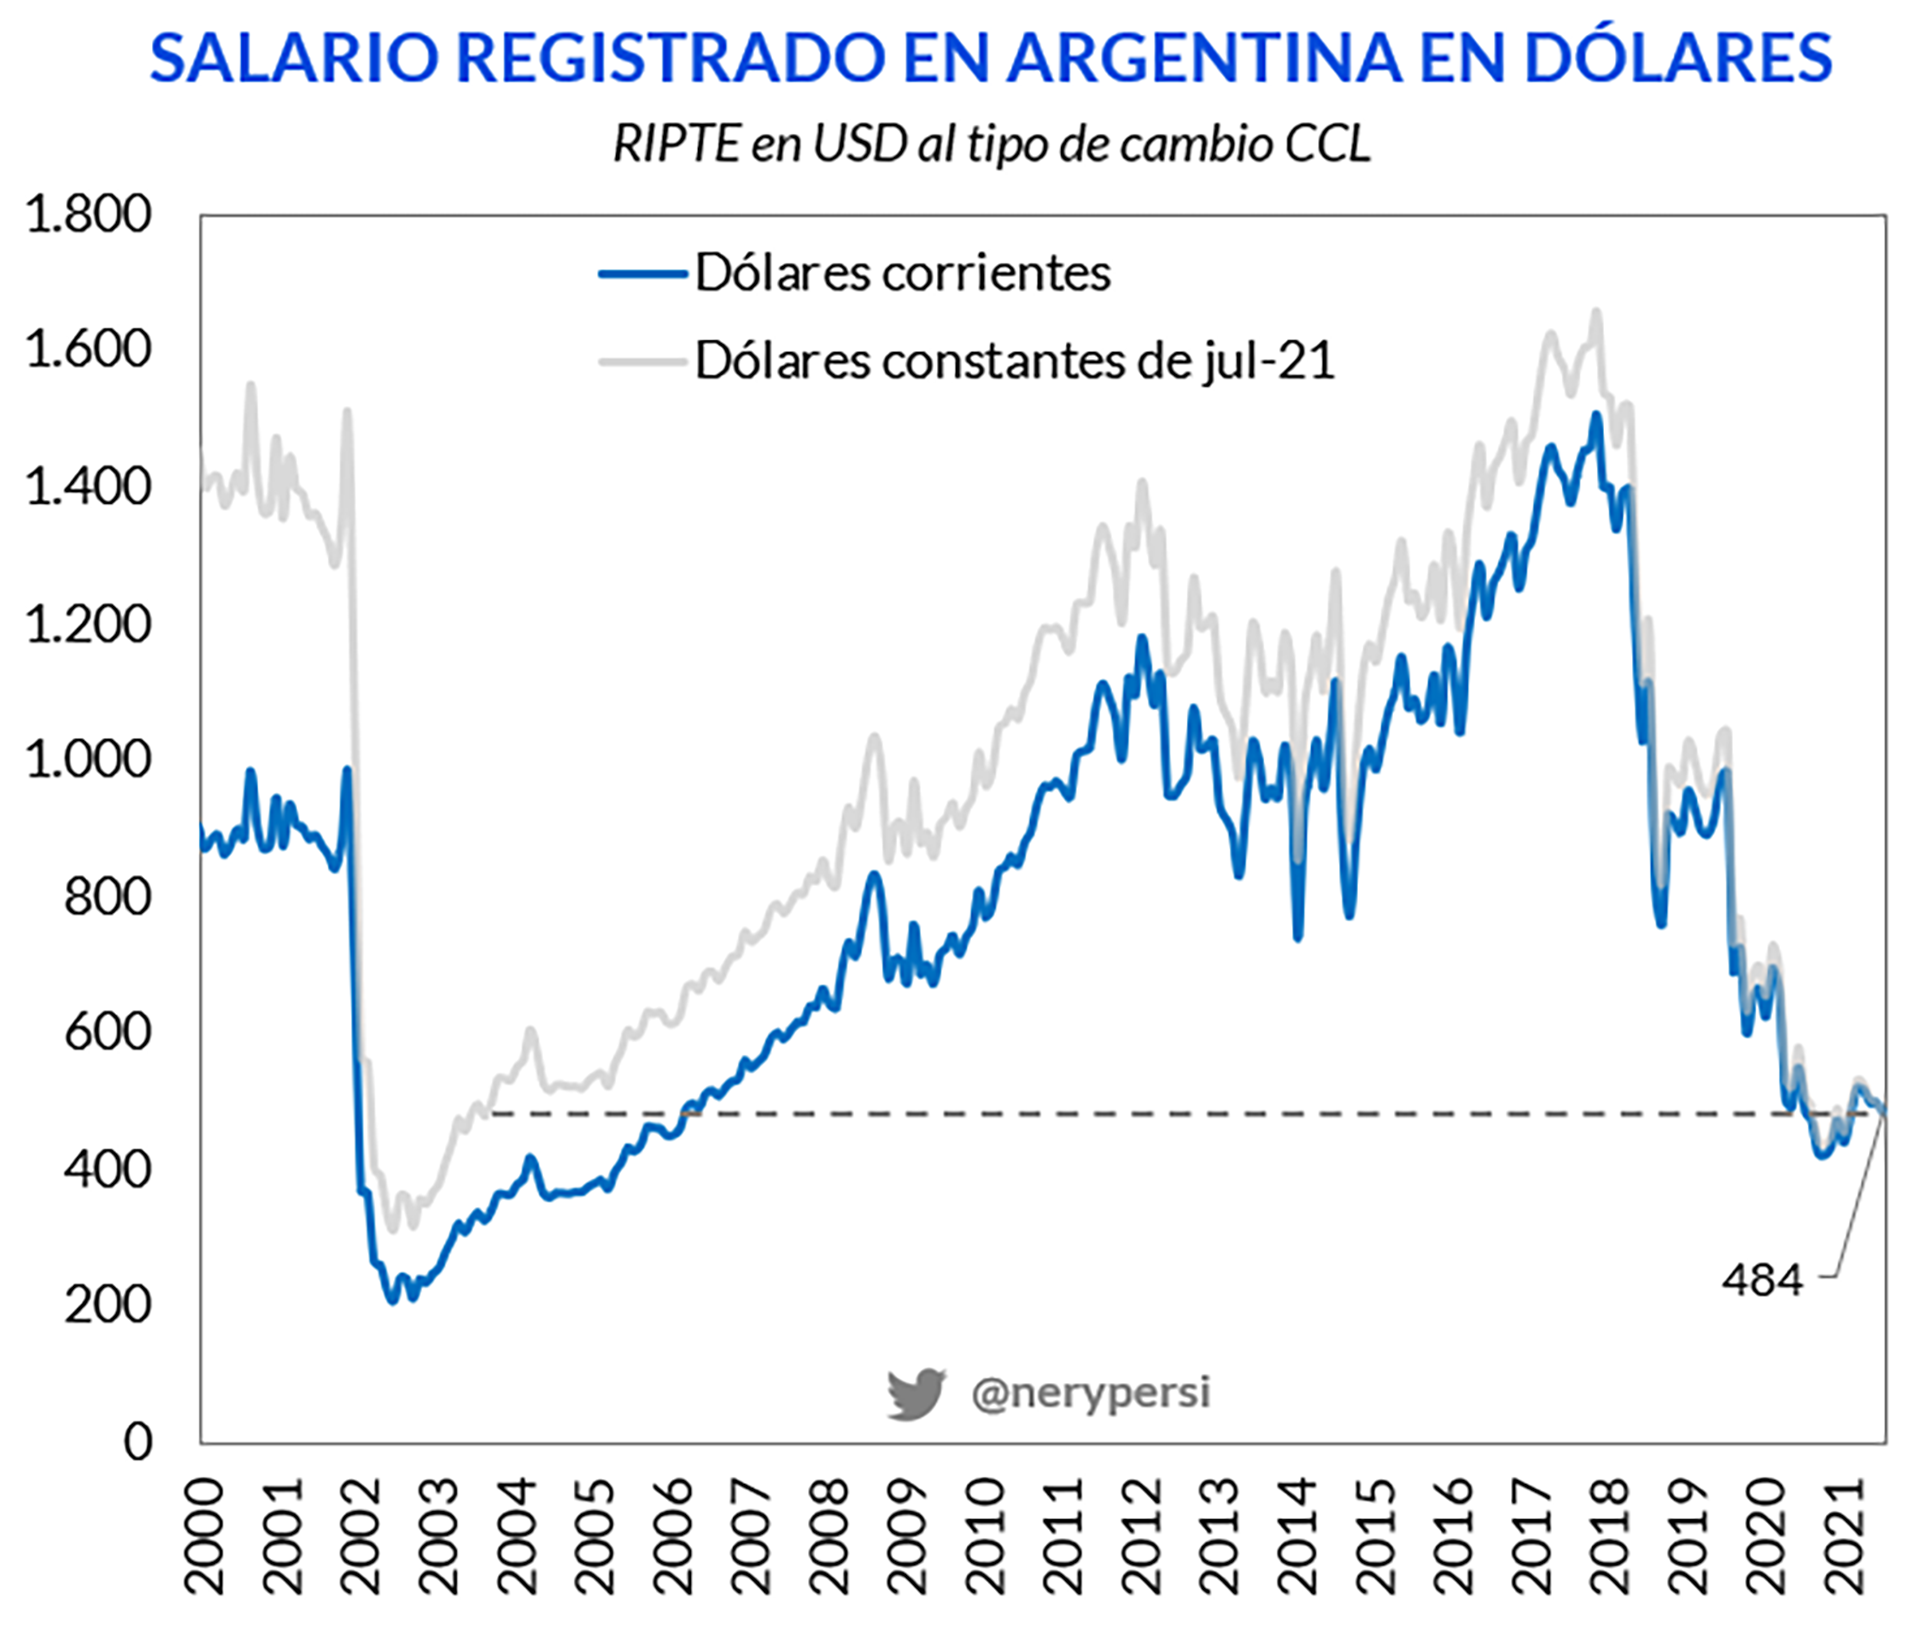 Evolución del salario registrado en Argentina en dólares
Fuente: Nery Persichini en base a cifras oficiales
